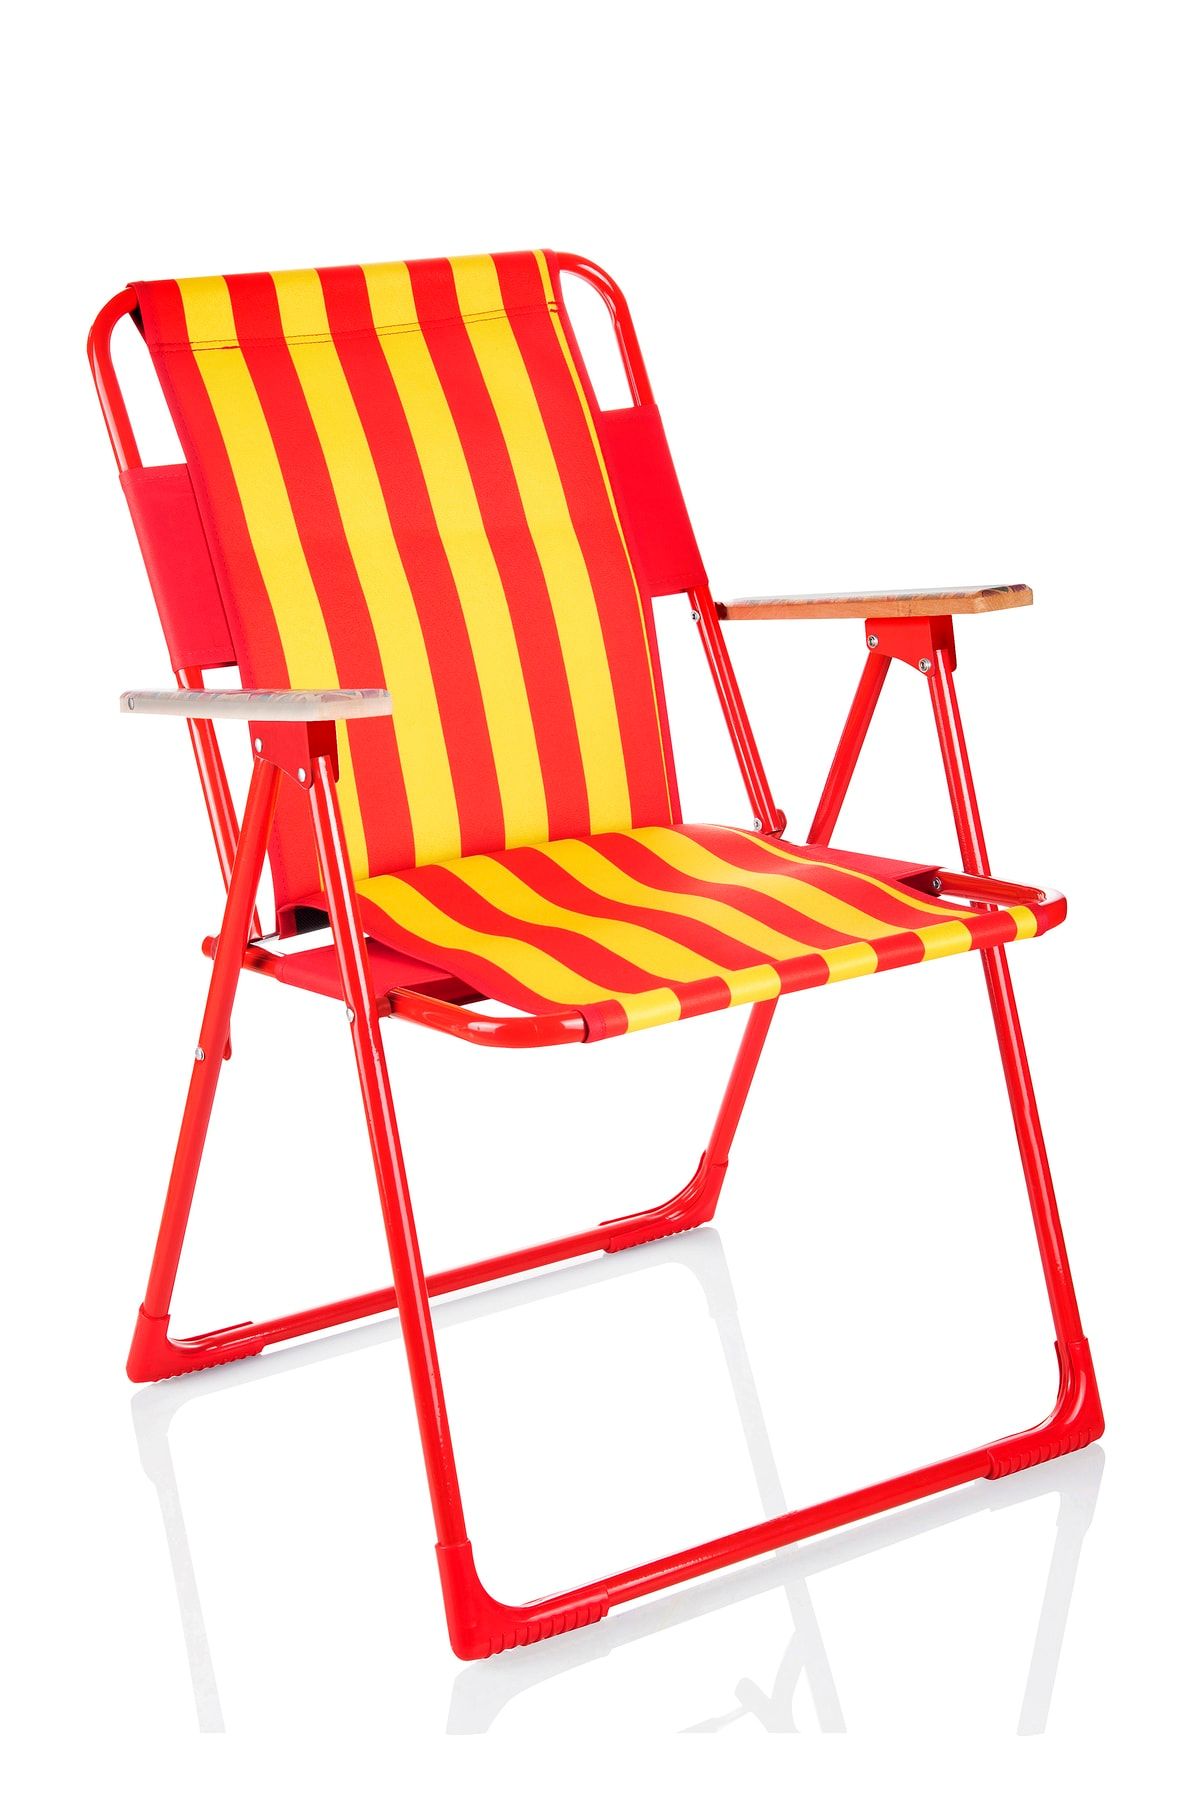 Miras Fans Pro Katlanır Sandalye , Sarı-kırmızı (2 YIL GARANTİ)